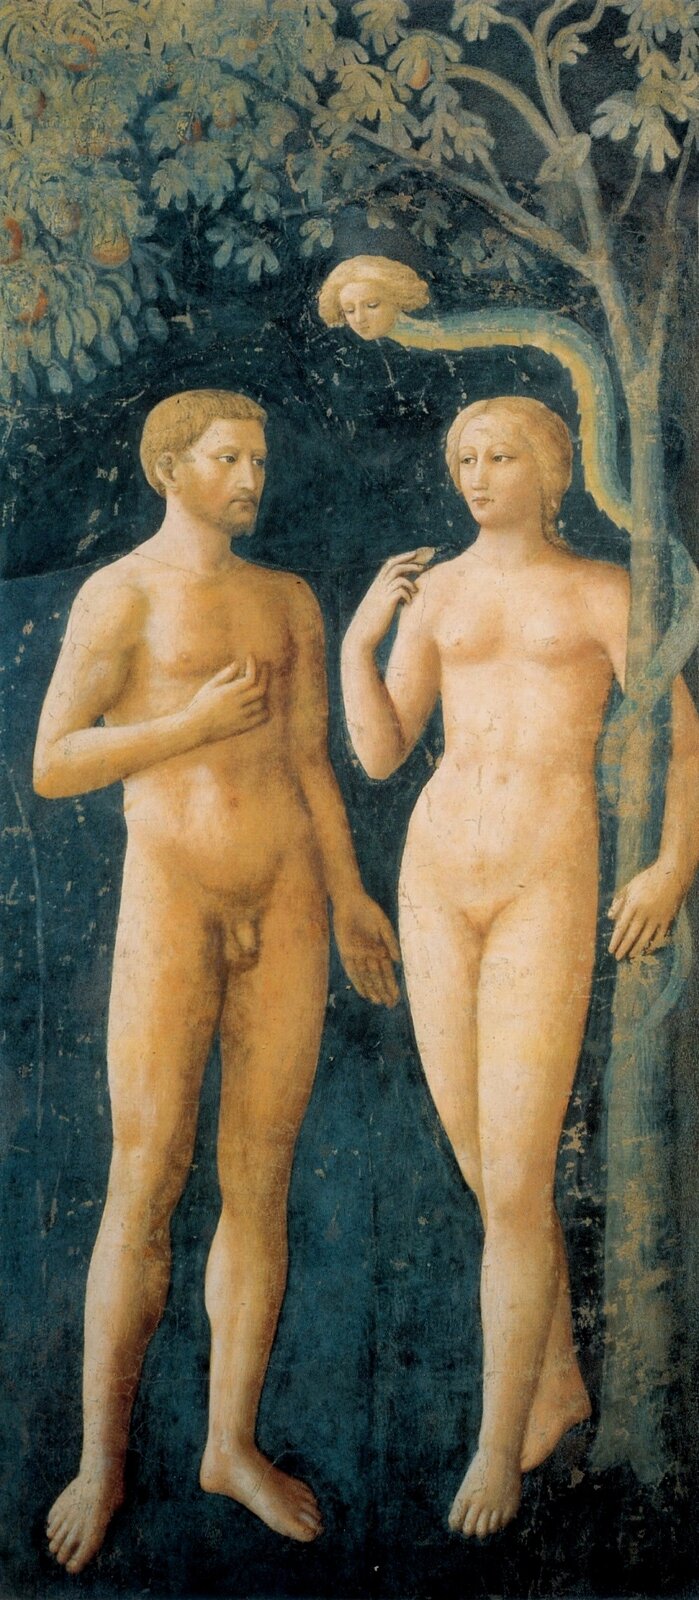 Ilustracja przedstawia fresk „Grzech pierworodny”, autorstwa Tommaso Masolina. Wertykalna kompozycja ukazuje nagie postacie Adama i Ewy w raju. Stojąca po prawej stronie kompozycji kobieta o jasnych, falowanych włosach i poważnych rysach twarzy, wspiera się lewą ręką o owocowe drzewko z zieloną koroną. W prawej, zgiętej w łokciu dłoni trzyma listek. Stojący obok niej, po lewej stronie brodaty mężczyzna z ułożoną na piersi prawą dłonią, chłodno spogląda na Ewę. Wygląda, jakby ją o coś pytał. Nad postaciami zawisł wąż z głową kobiety. Jego tułów wije się wokół drzewa, o które wsparła się Ewa. Postacie ustawione są na ciemno‑niebieskim tle. Zarówno chłodna, mroczna tonacja obrazu, jak i powaga twarzy namalowanych postaci tworzą atmosferę niepokoju. Dzieło utrzymane jest w ciemnej, wąskiej gamie barw z dominacją chłodnych granatów i zieleni oraz ciepłych beżów.